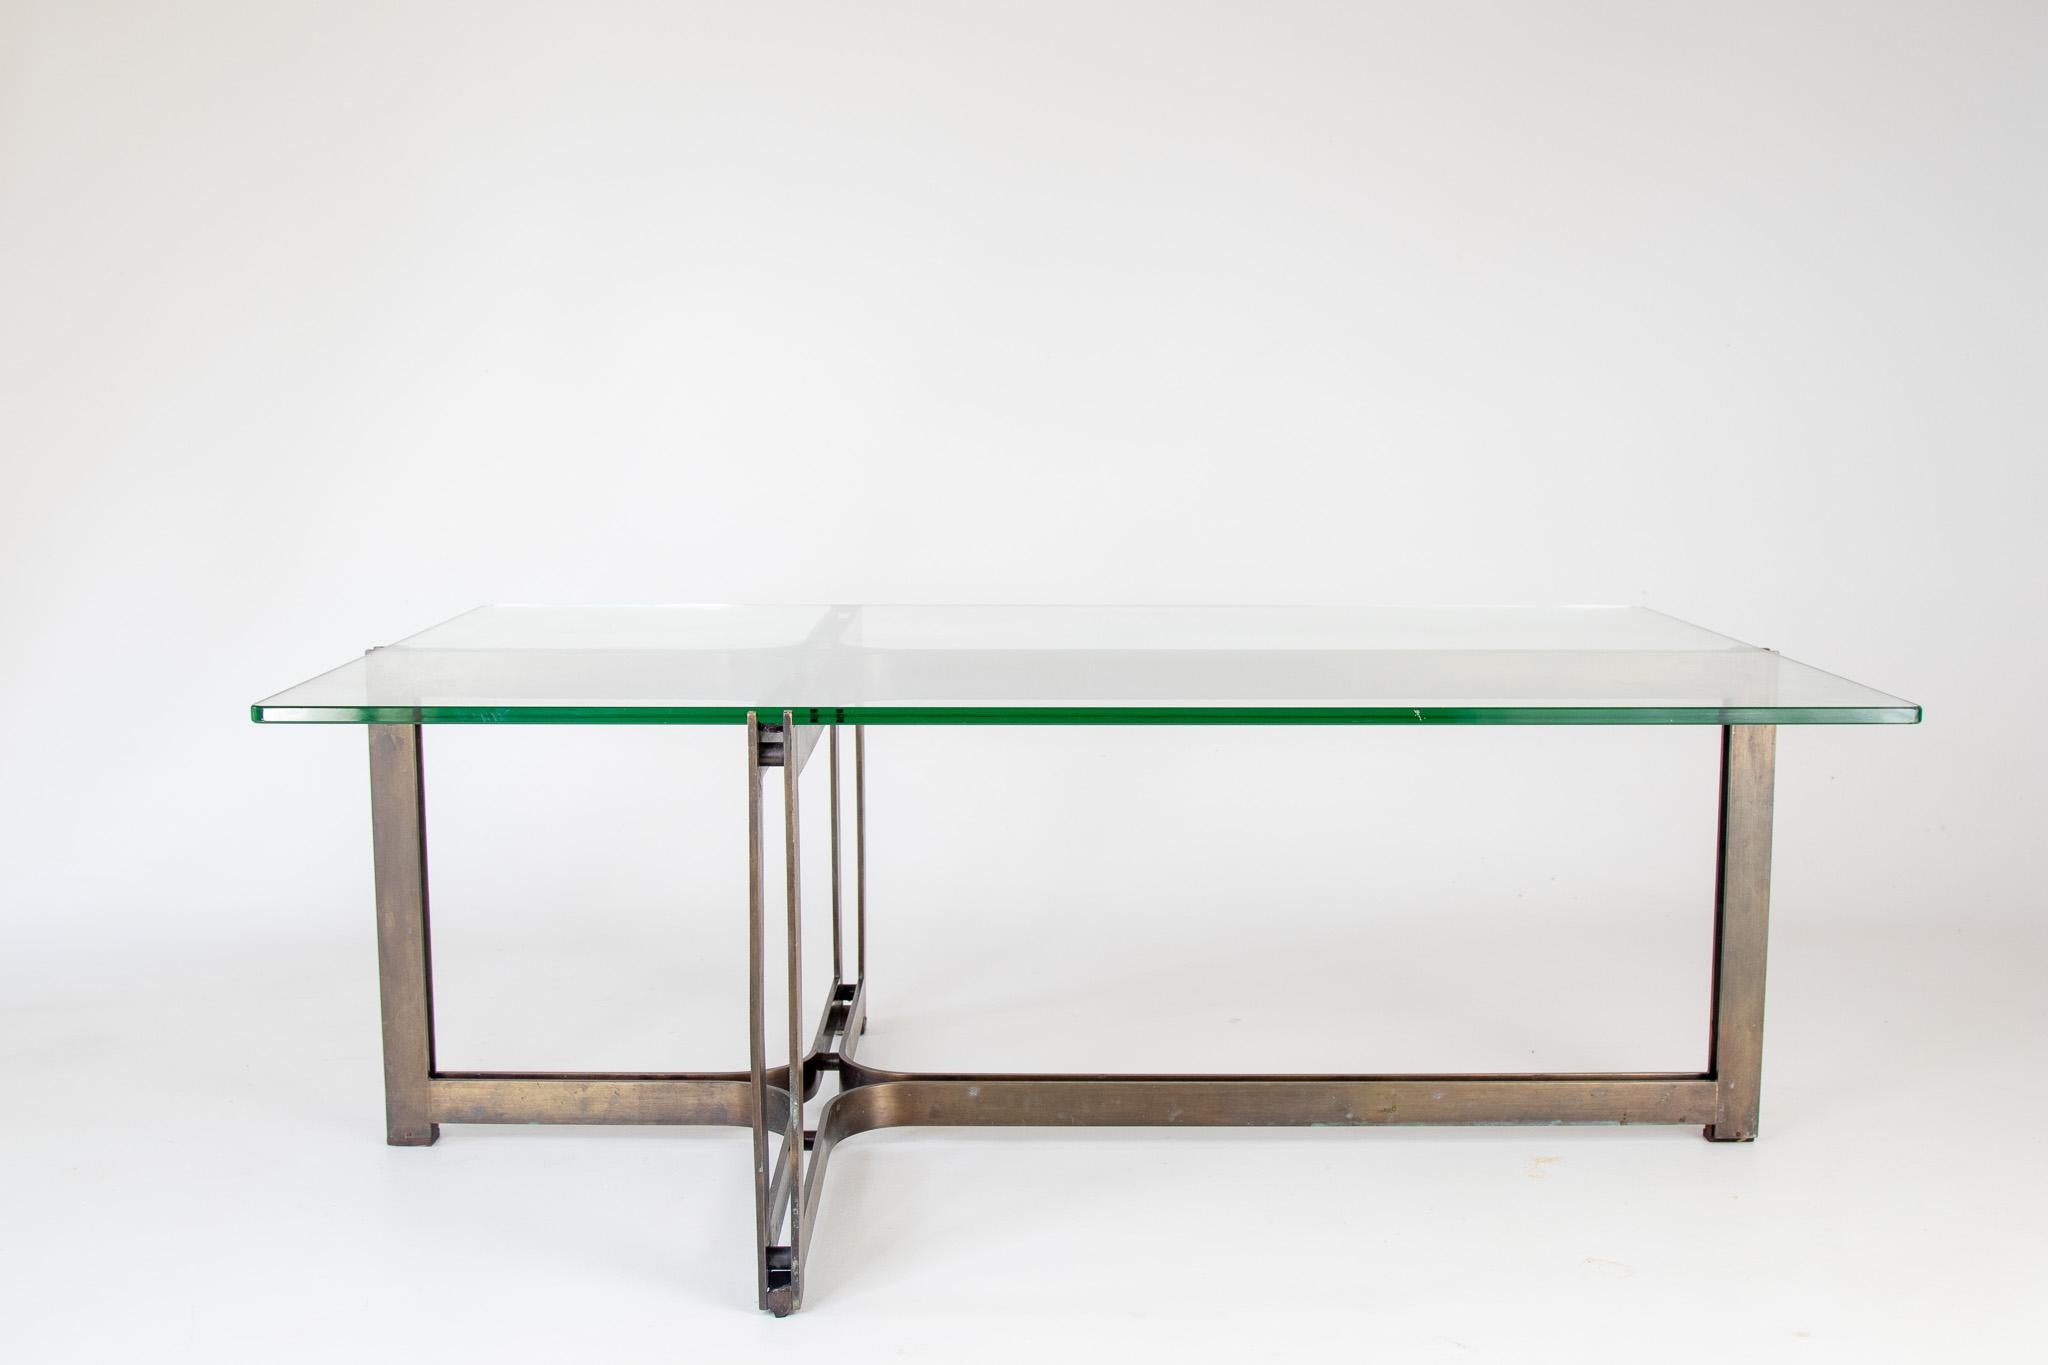 Une table basse en bronze massif à la forme architecturale minimaliste. Conçu par Tom Lopinski pour la société de meubles Dunbar dans les années 1970. Le plateau en verre est d'origine et présente un beau profil vert.  Similaire aux designs de